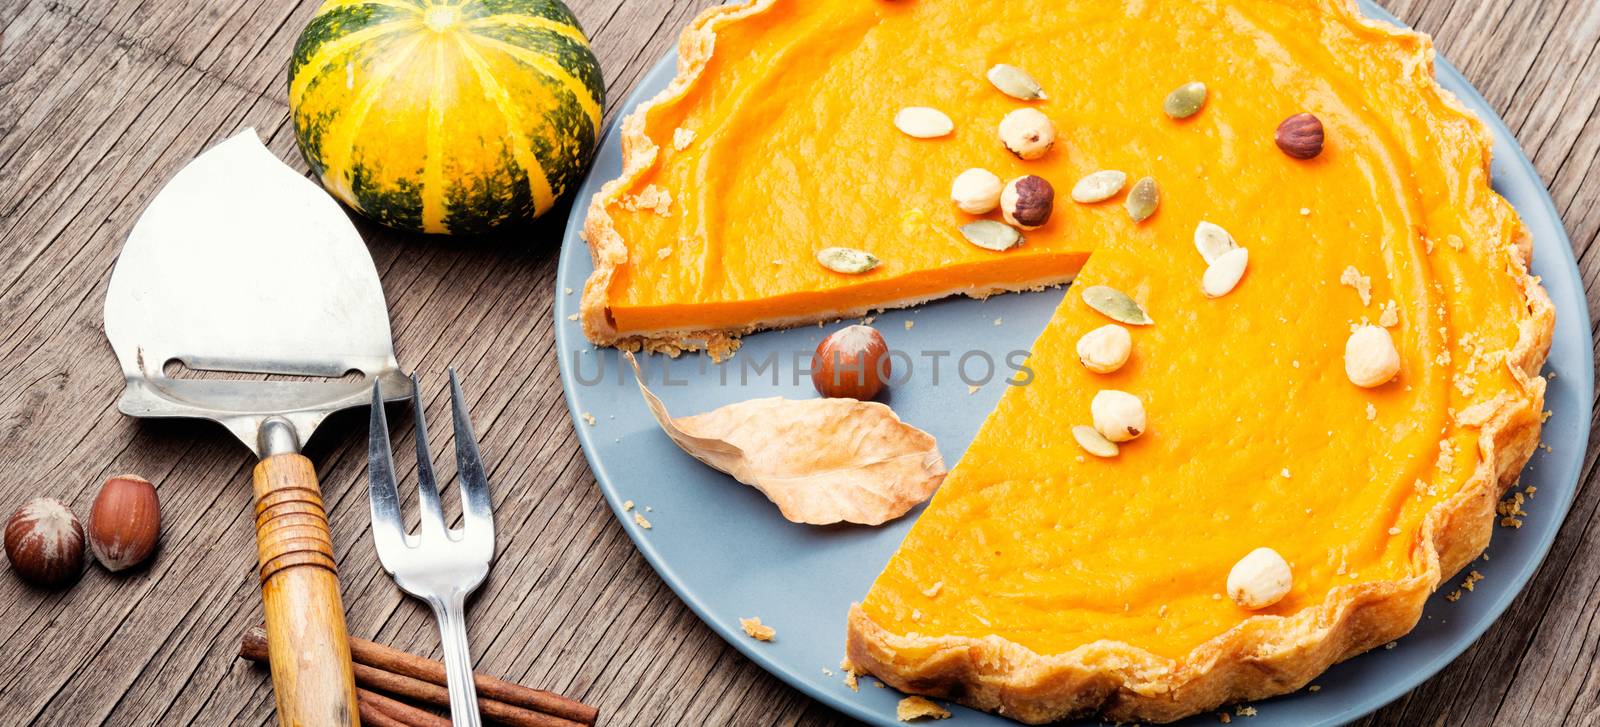 Autumn pumpkin pie by LMykola